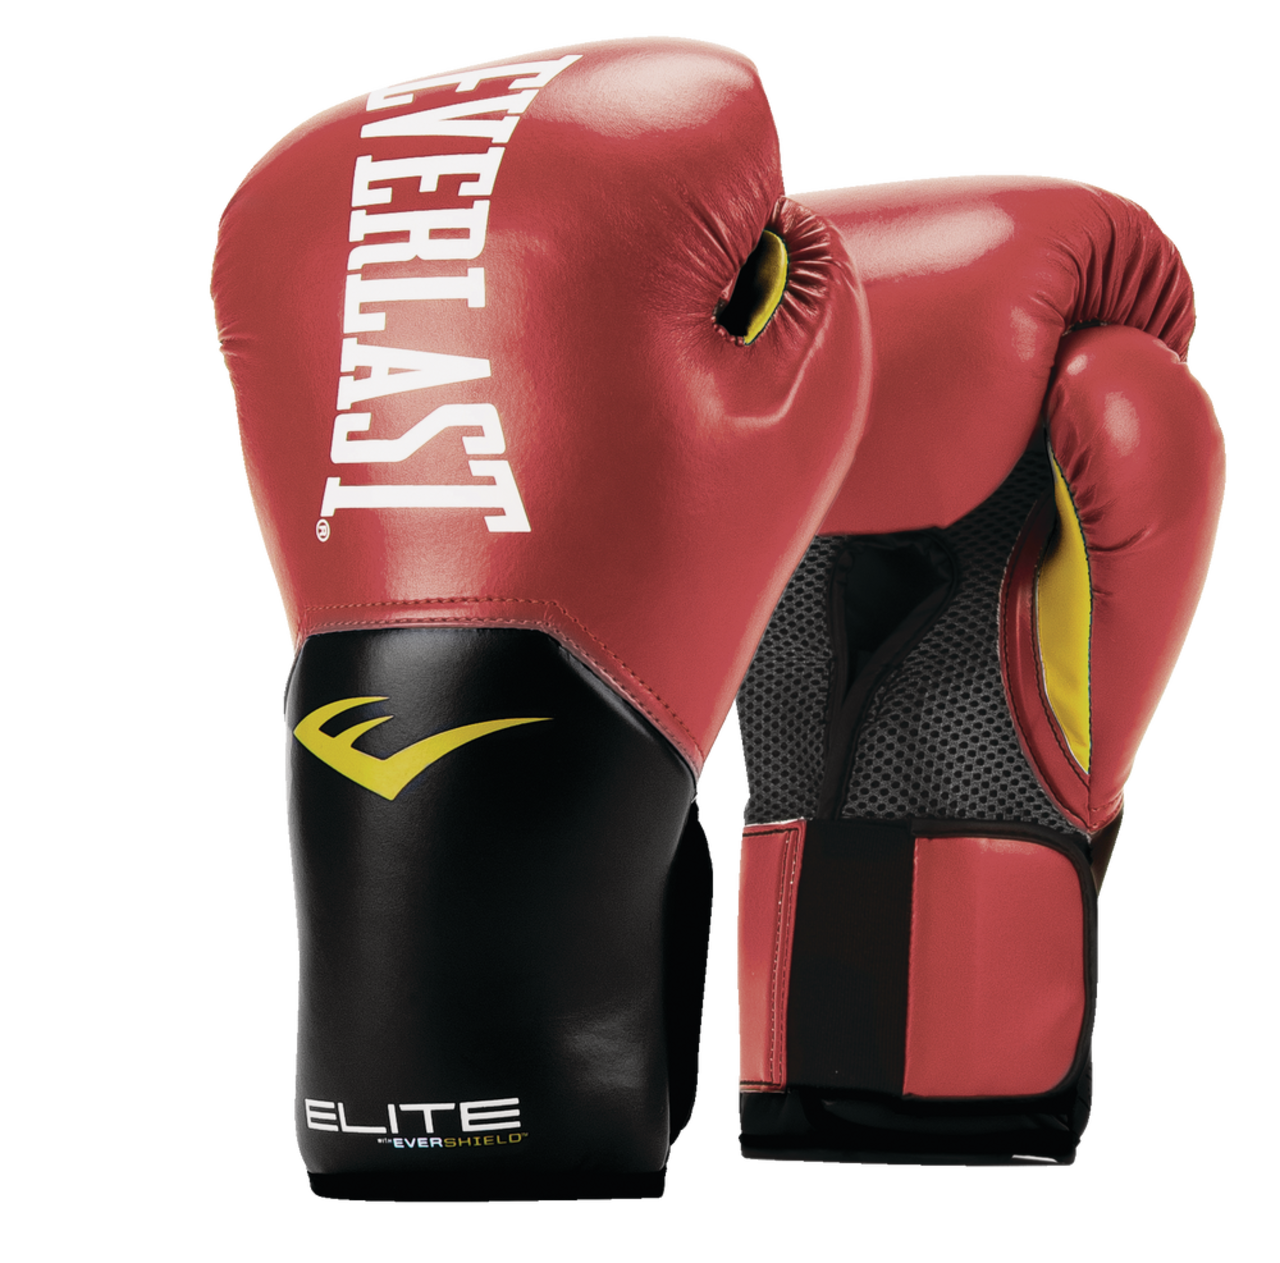 Everlast Elite 2.0 Boxing Gloves, Red, 14-oz